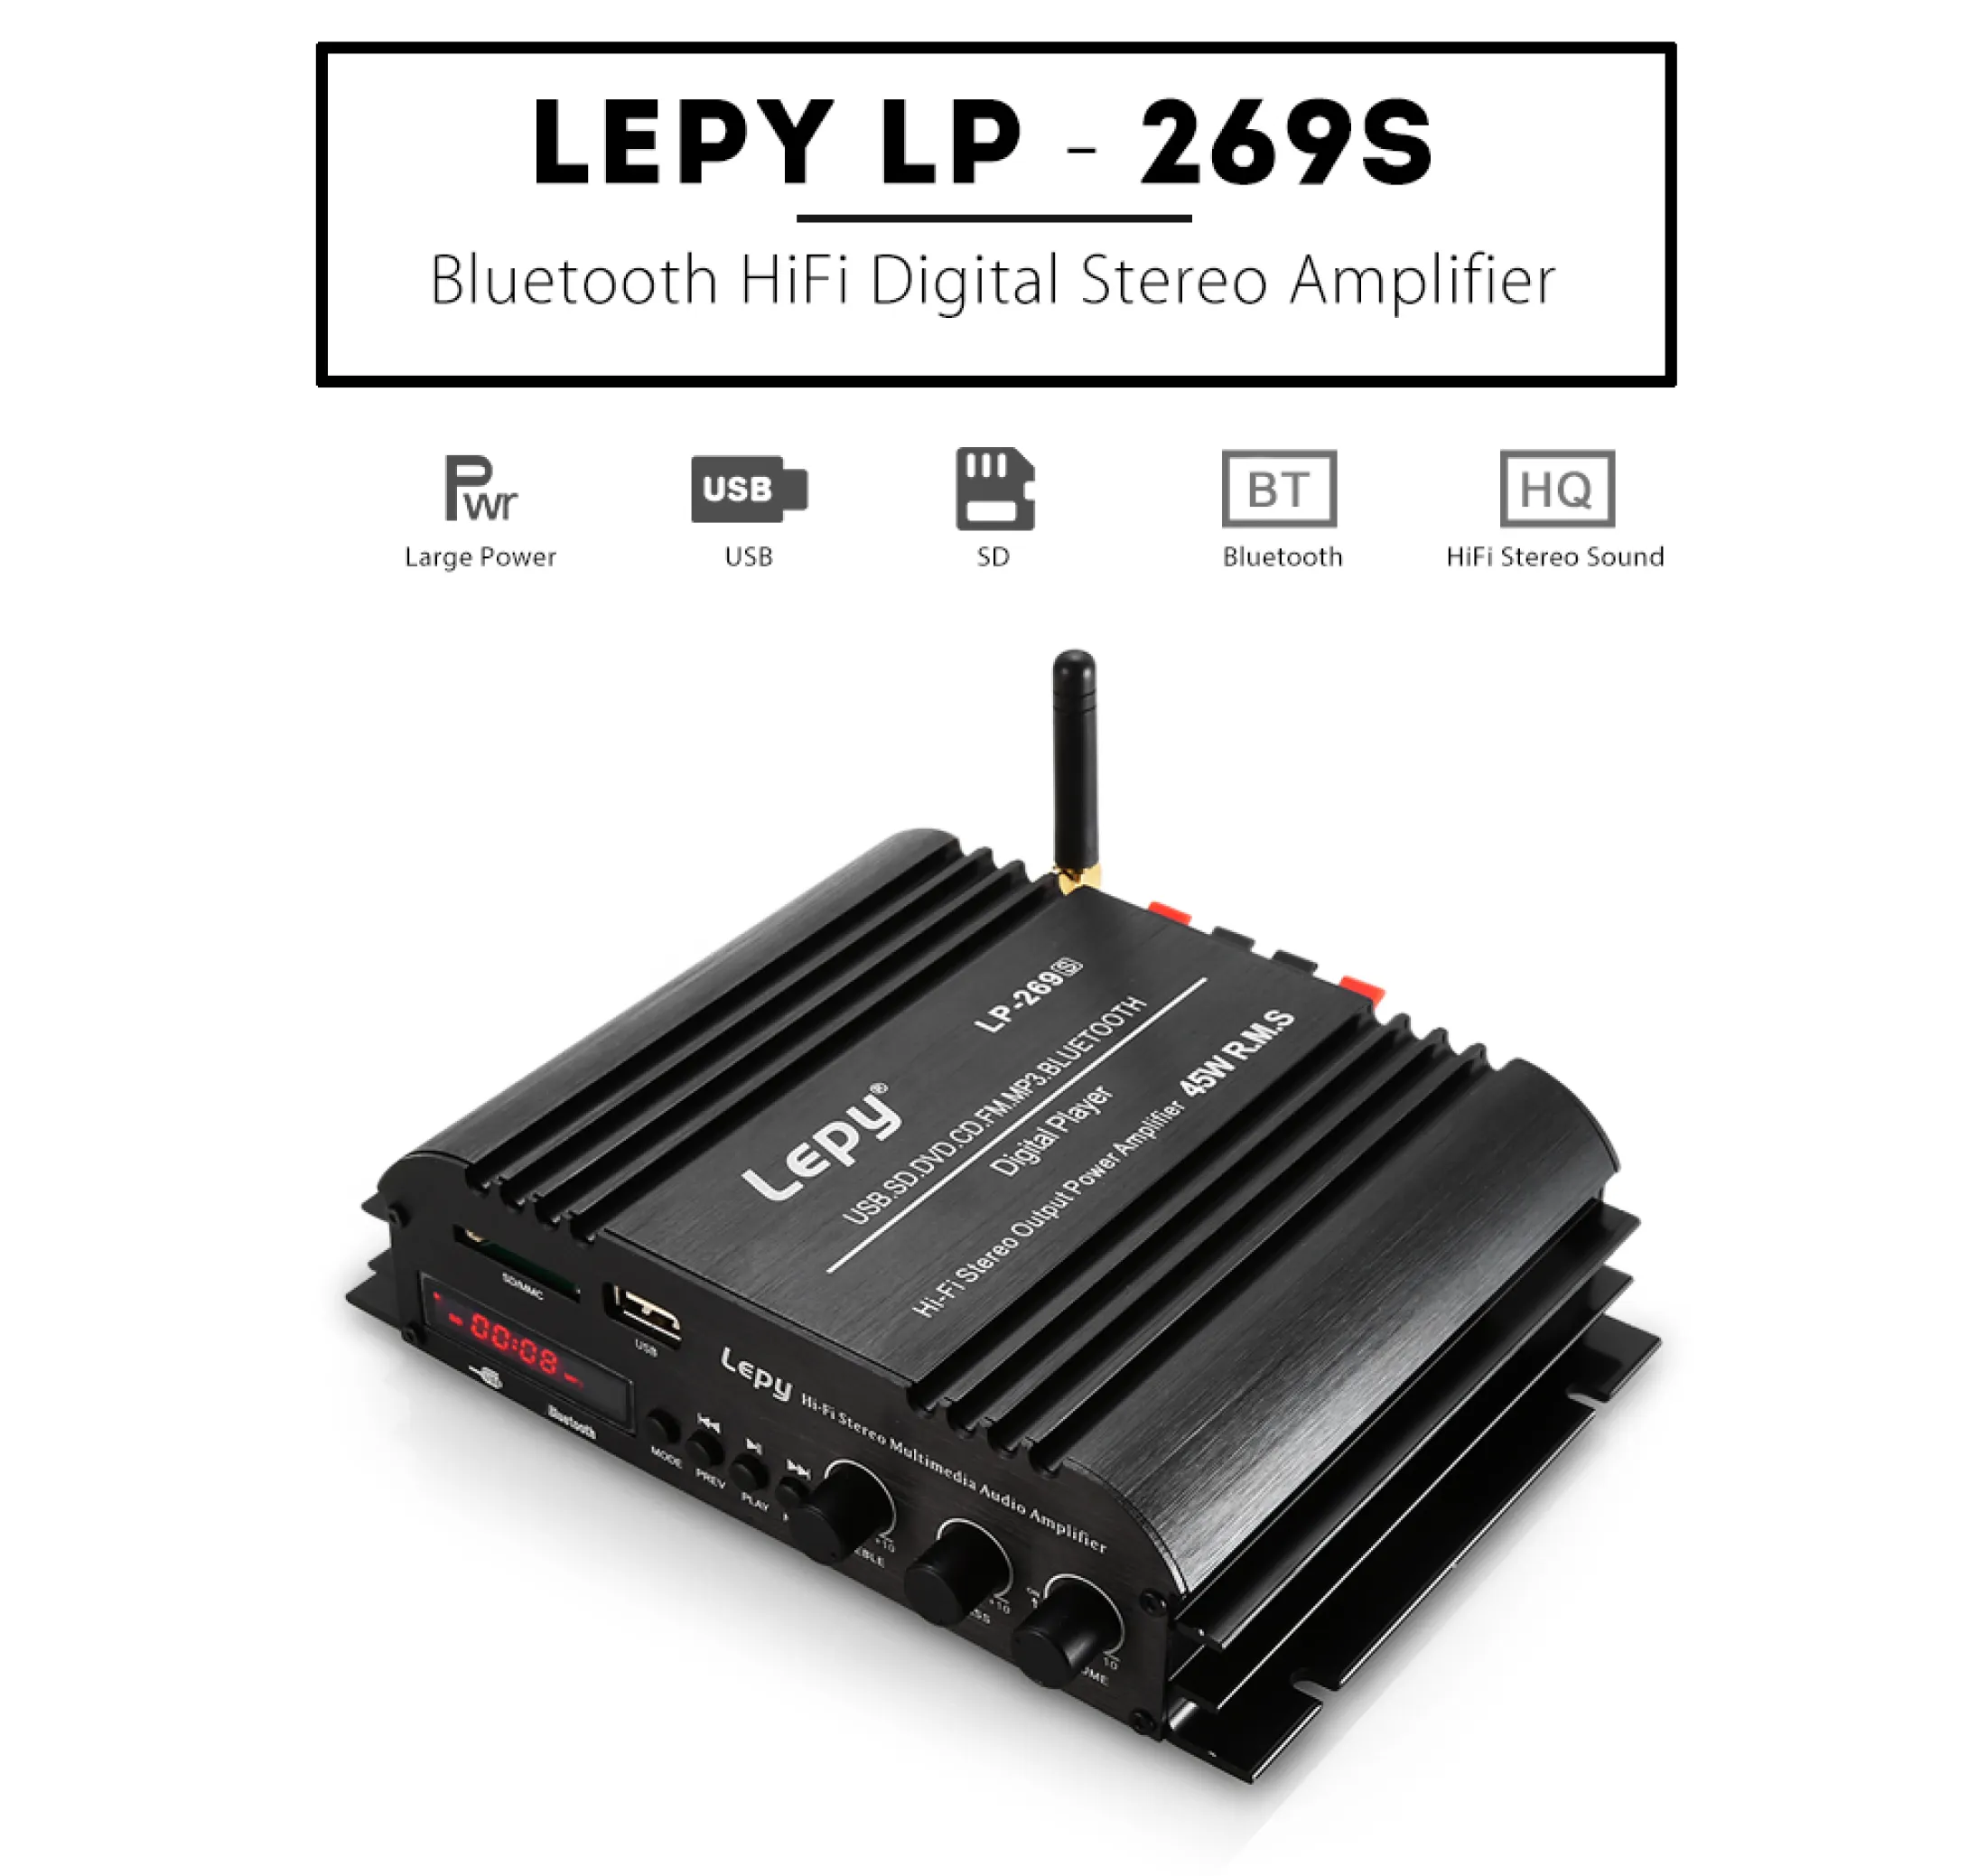 Ampli Mini Lepy Lp-838 Hi-Fi 2.1 bộ khuếch đại âm thanh lepy LP 838 -